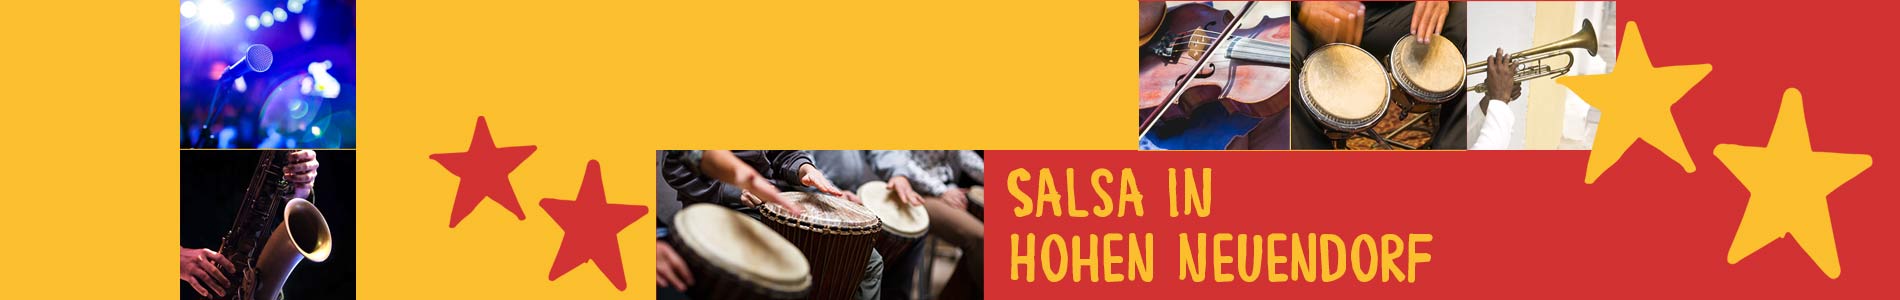 Salsa in Hohen Neuendorf – Salsa lernen und tanzen, Tanzkurse, Partys, Veranstaltungen